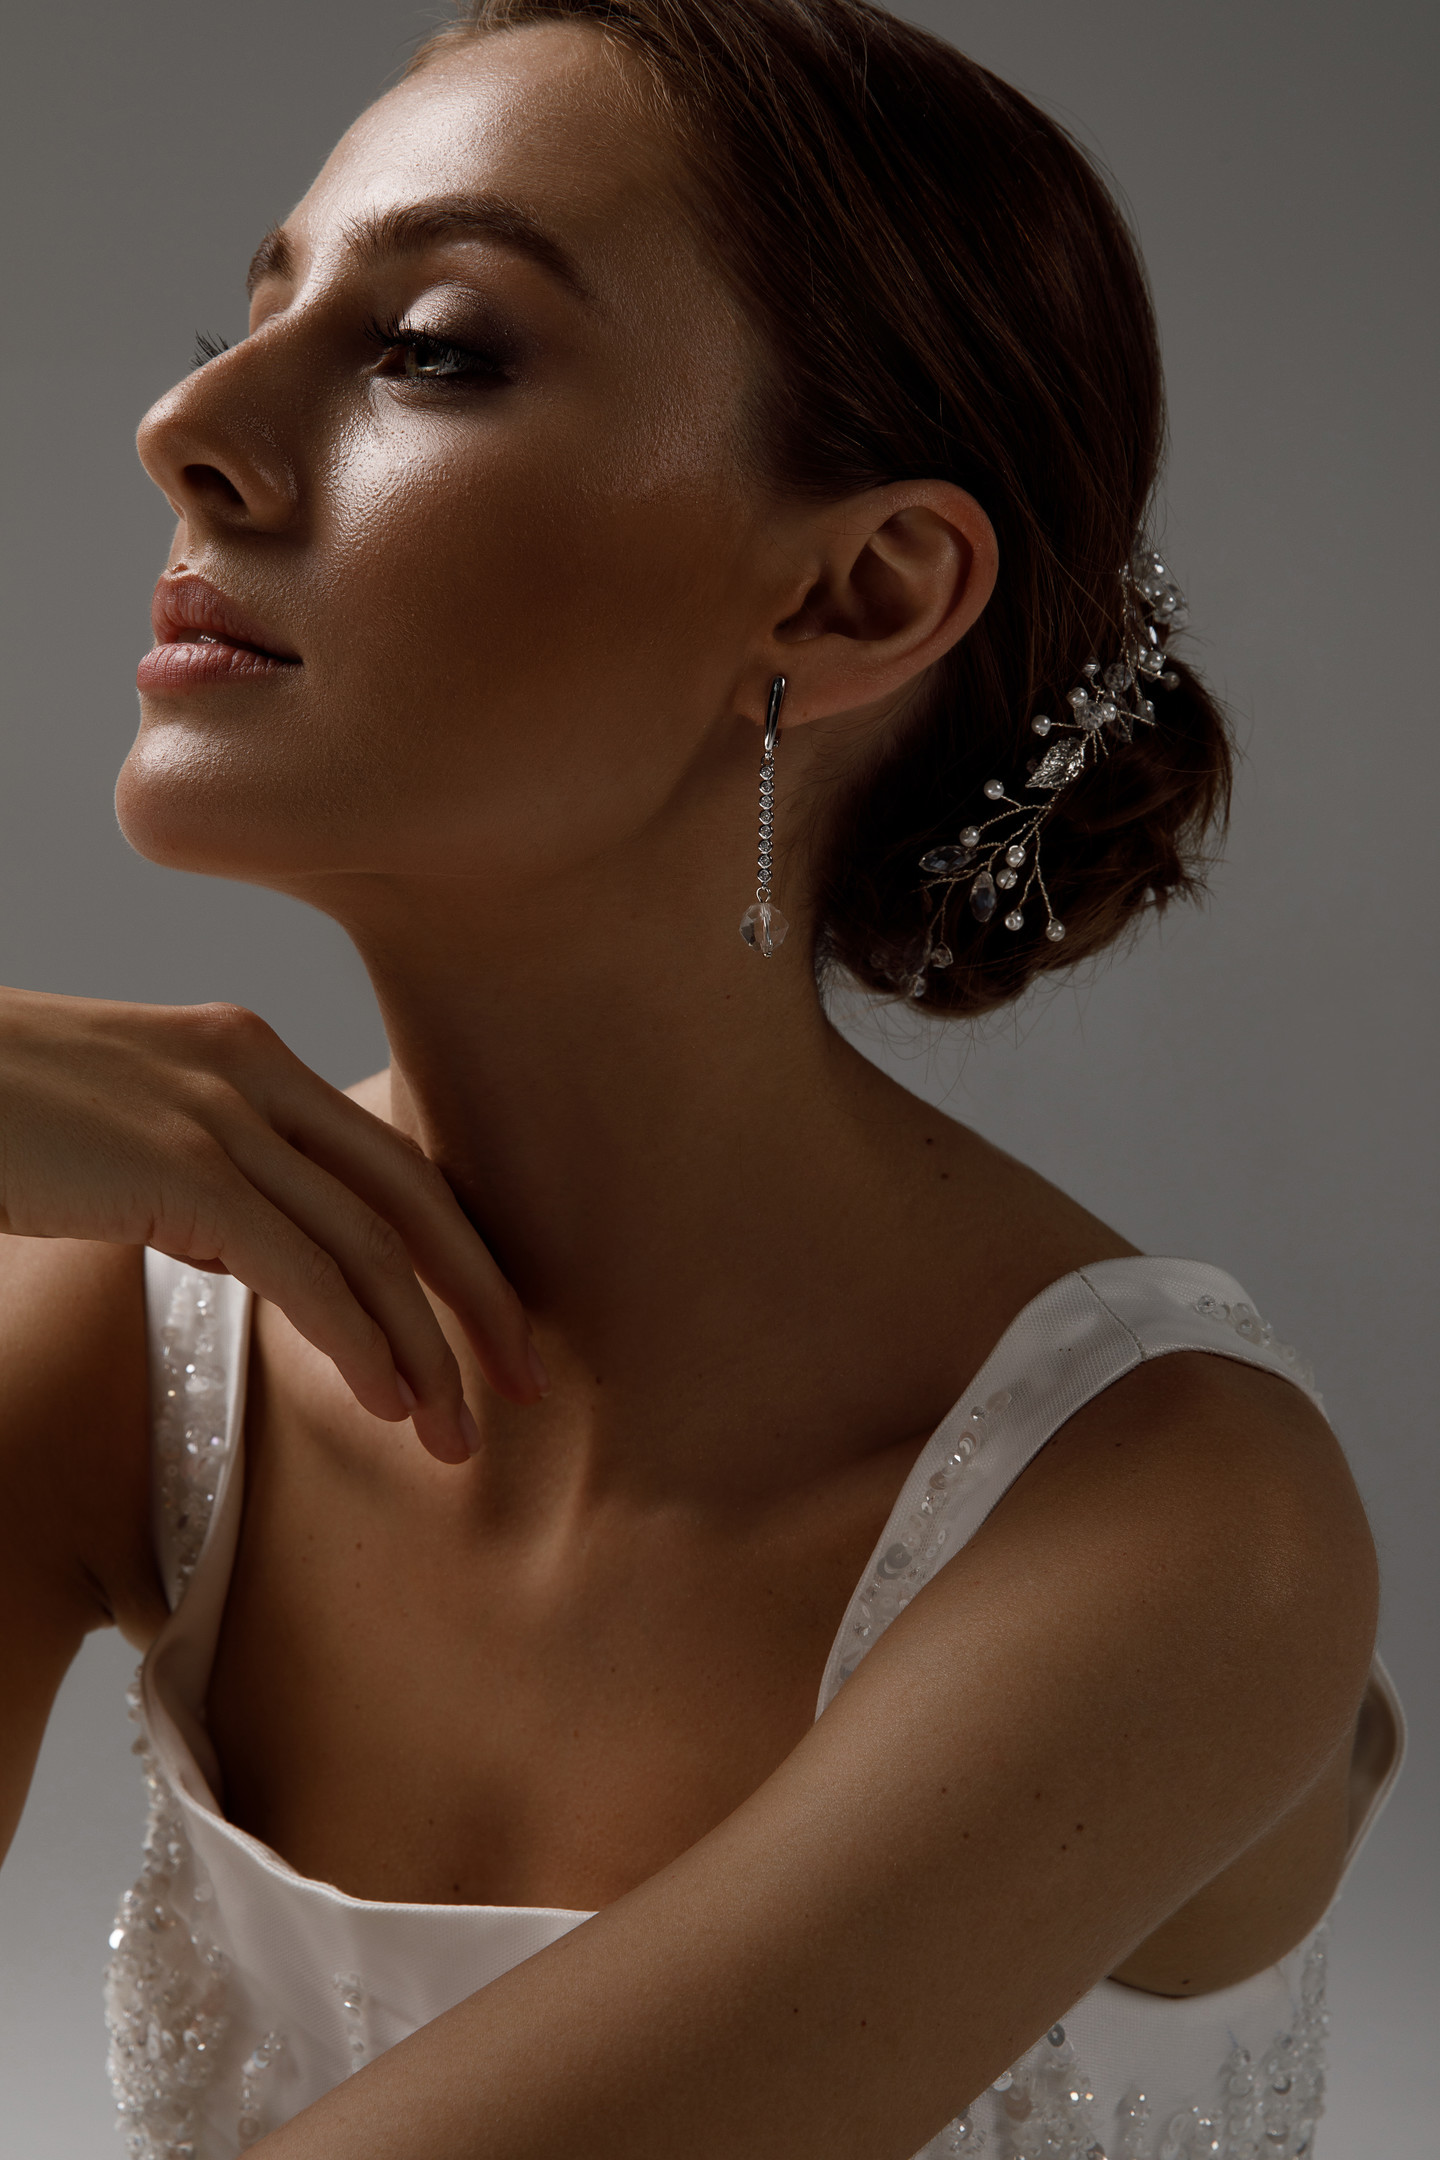 Crystal earrings, accessories, earrings